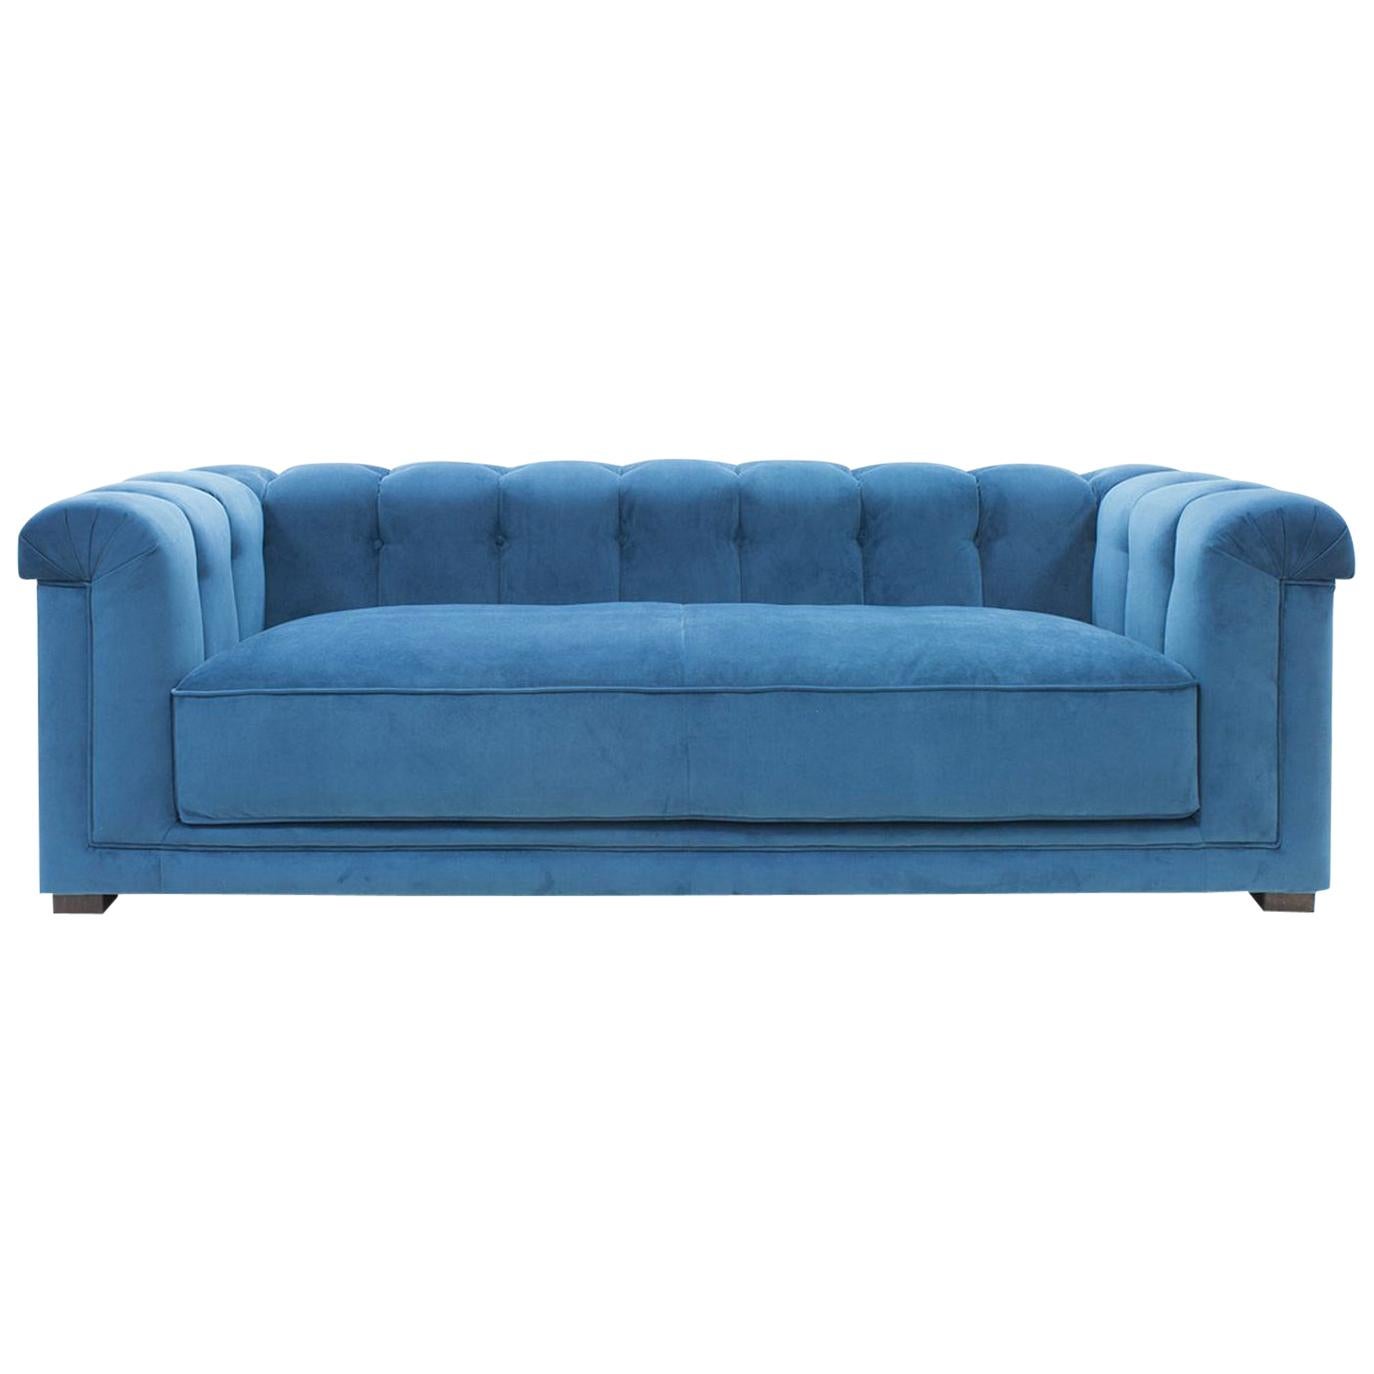 Lander Sofa For Sale